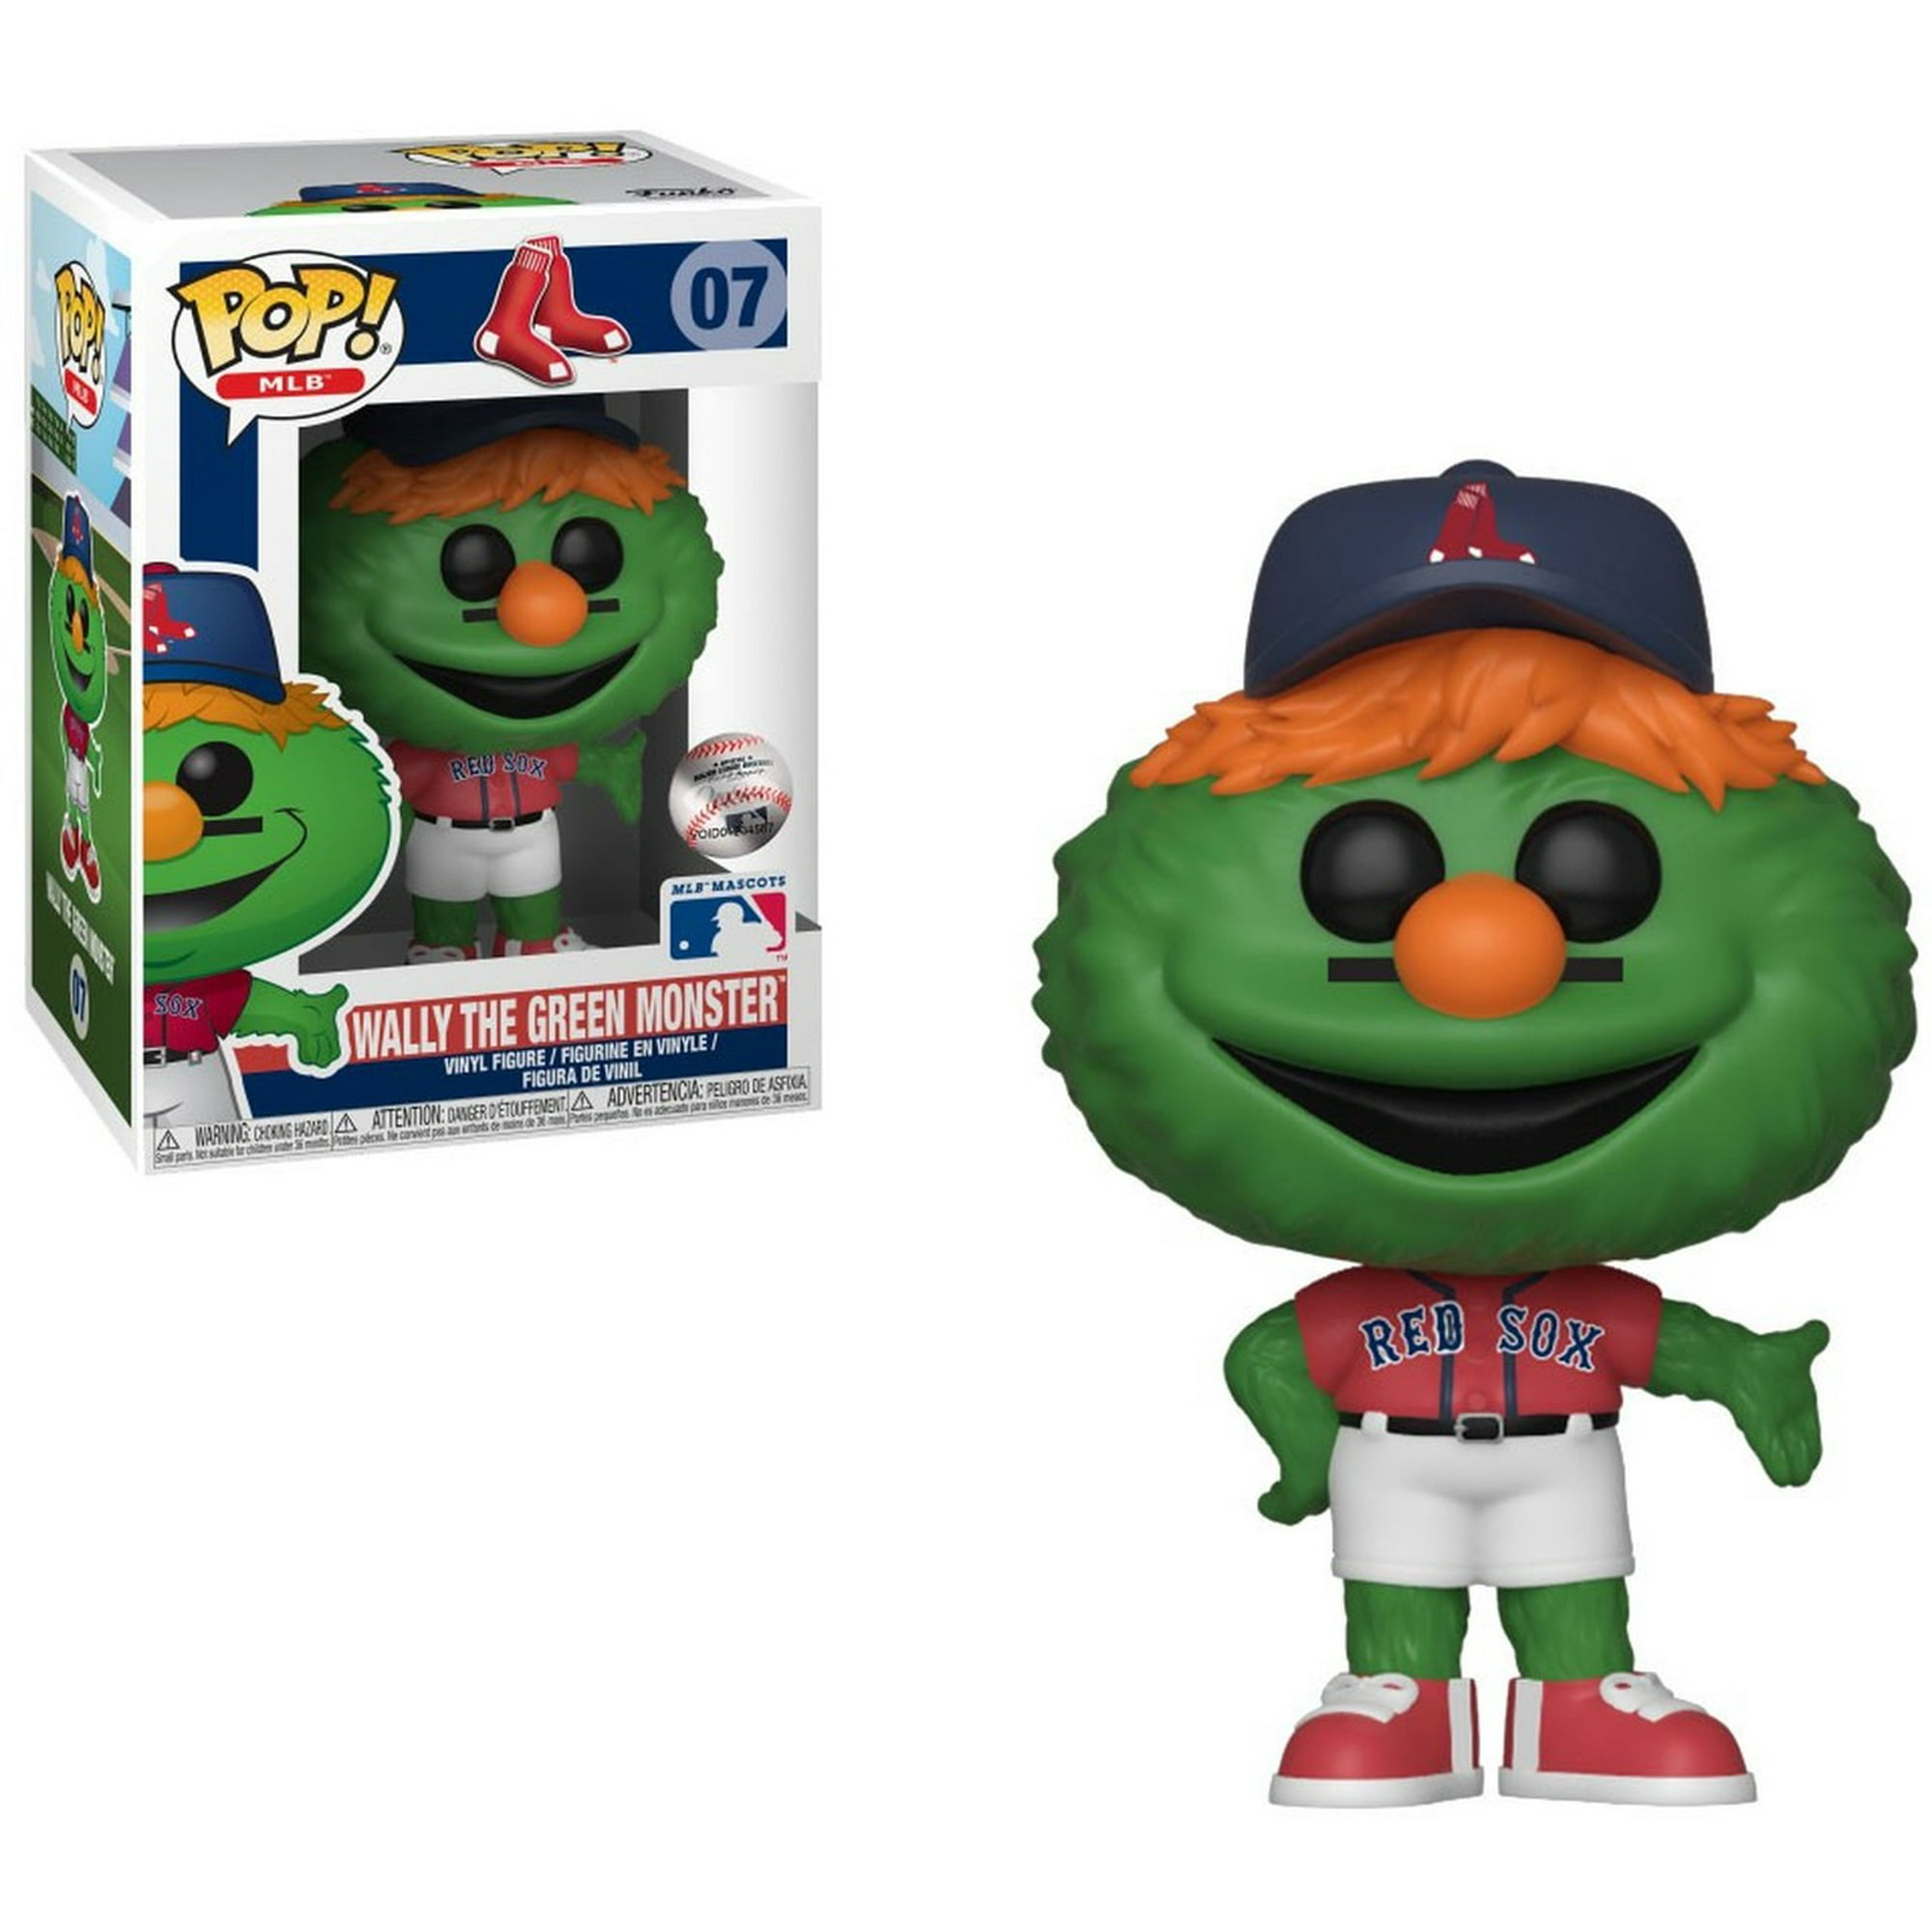 Major League Baseball Boston Red Sox Funko POP! MLB Wally the